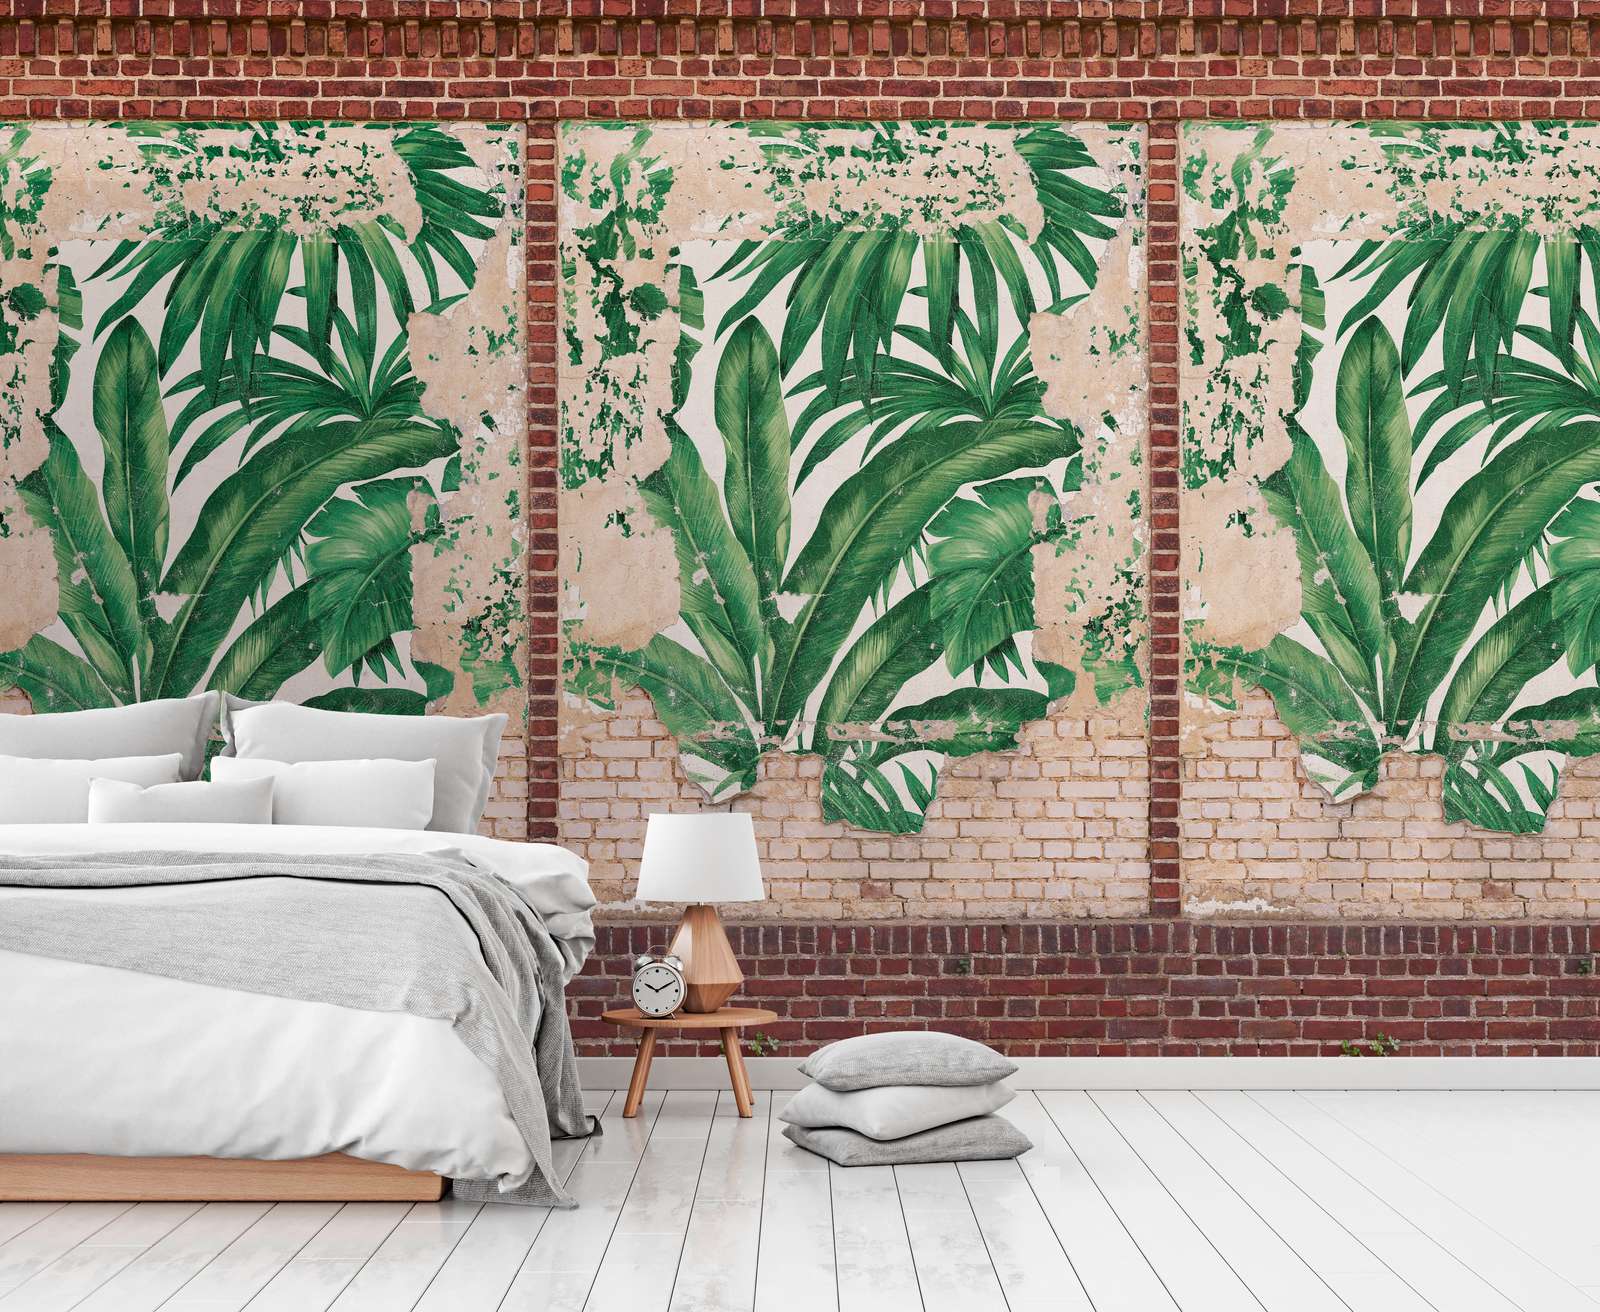             Palmenblätter Tapete auf Ziegelsteinoptik Wand – Braun, Beige, Rot
        